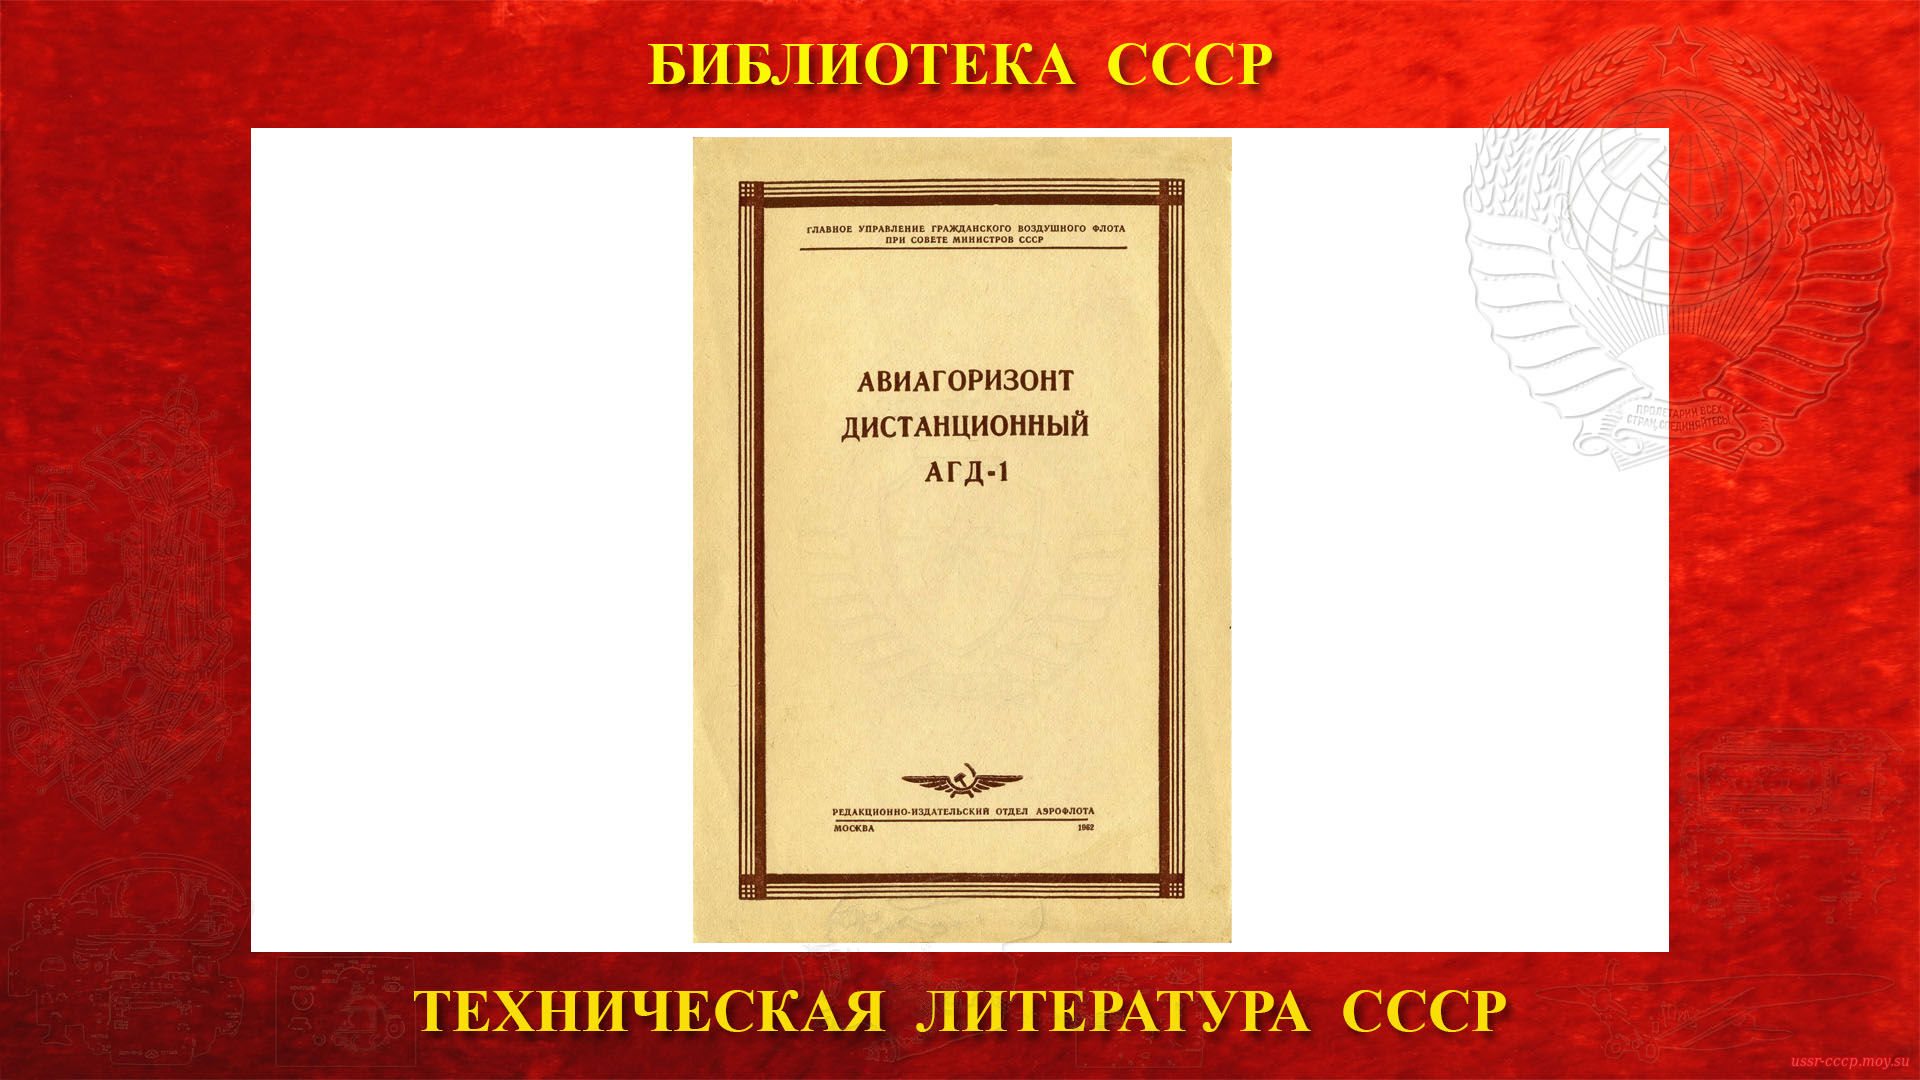 Авиагоризонт дистанционный АГД-1 — Библиотека СССР (1962)